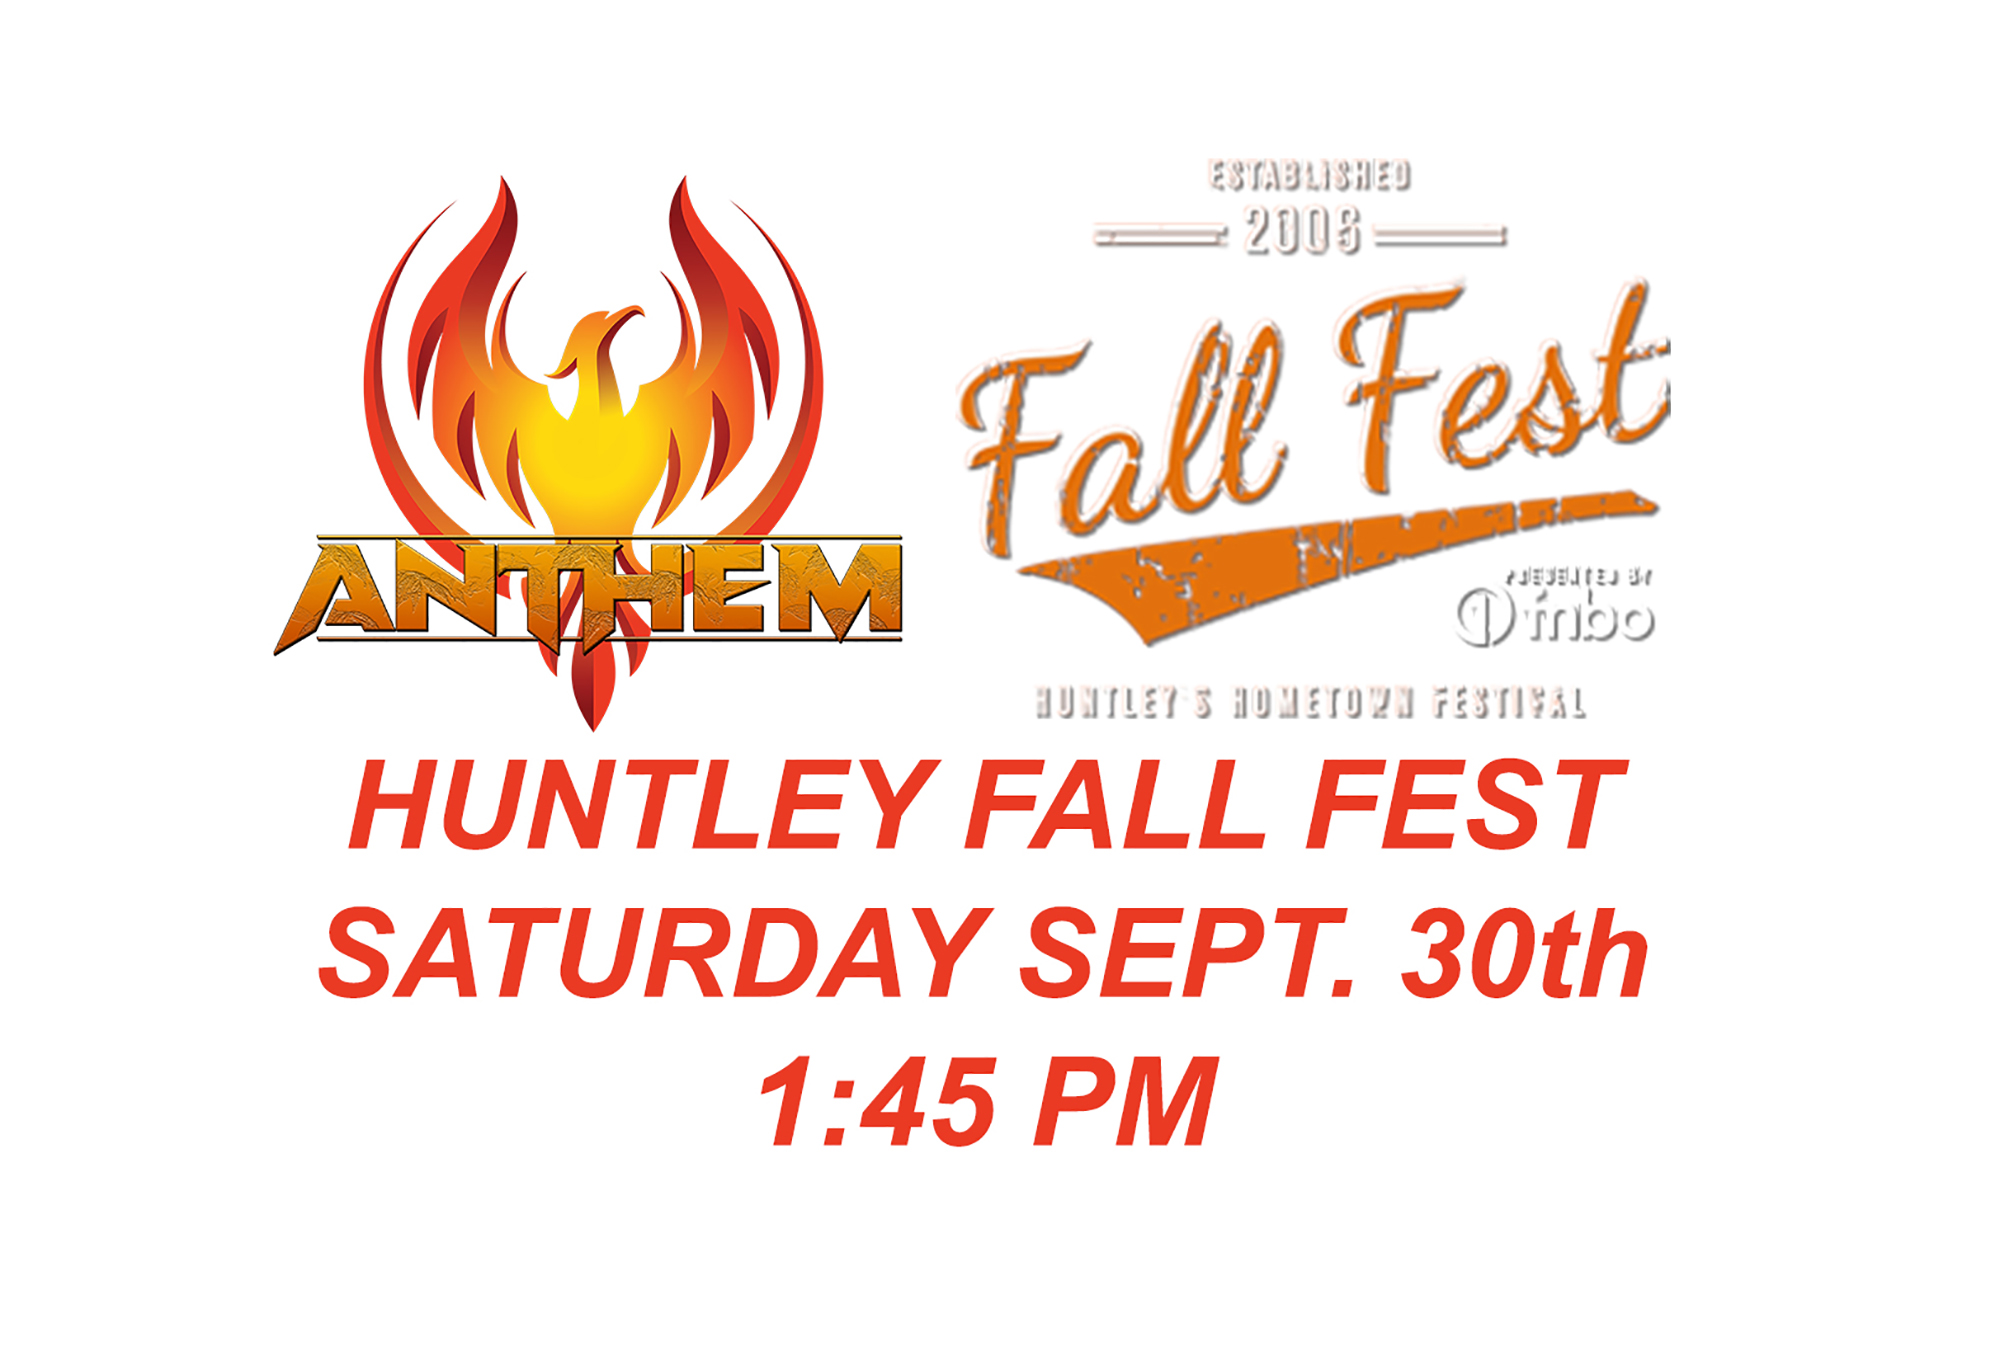 Anthem Huntley Fall Fest